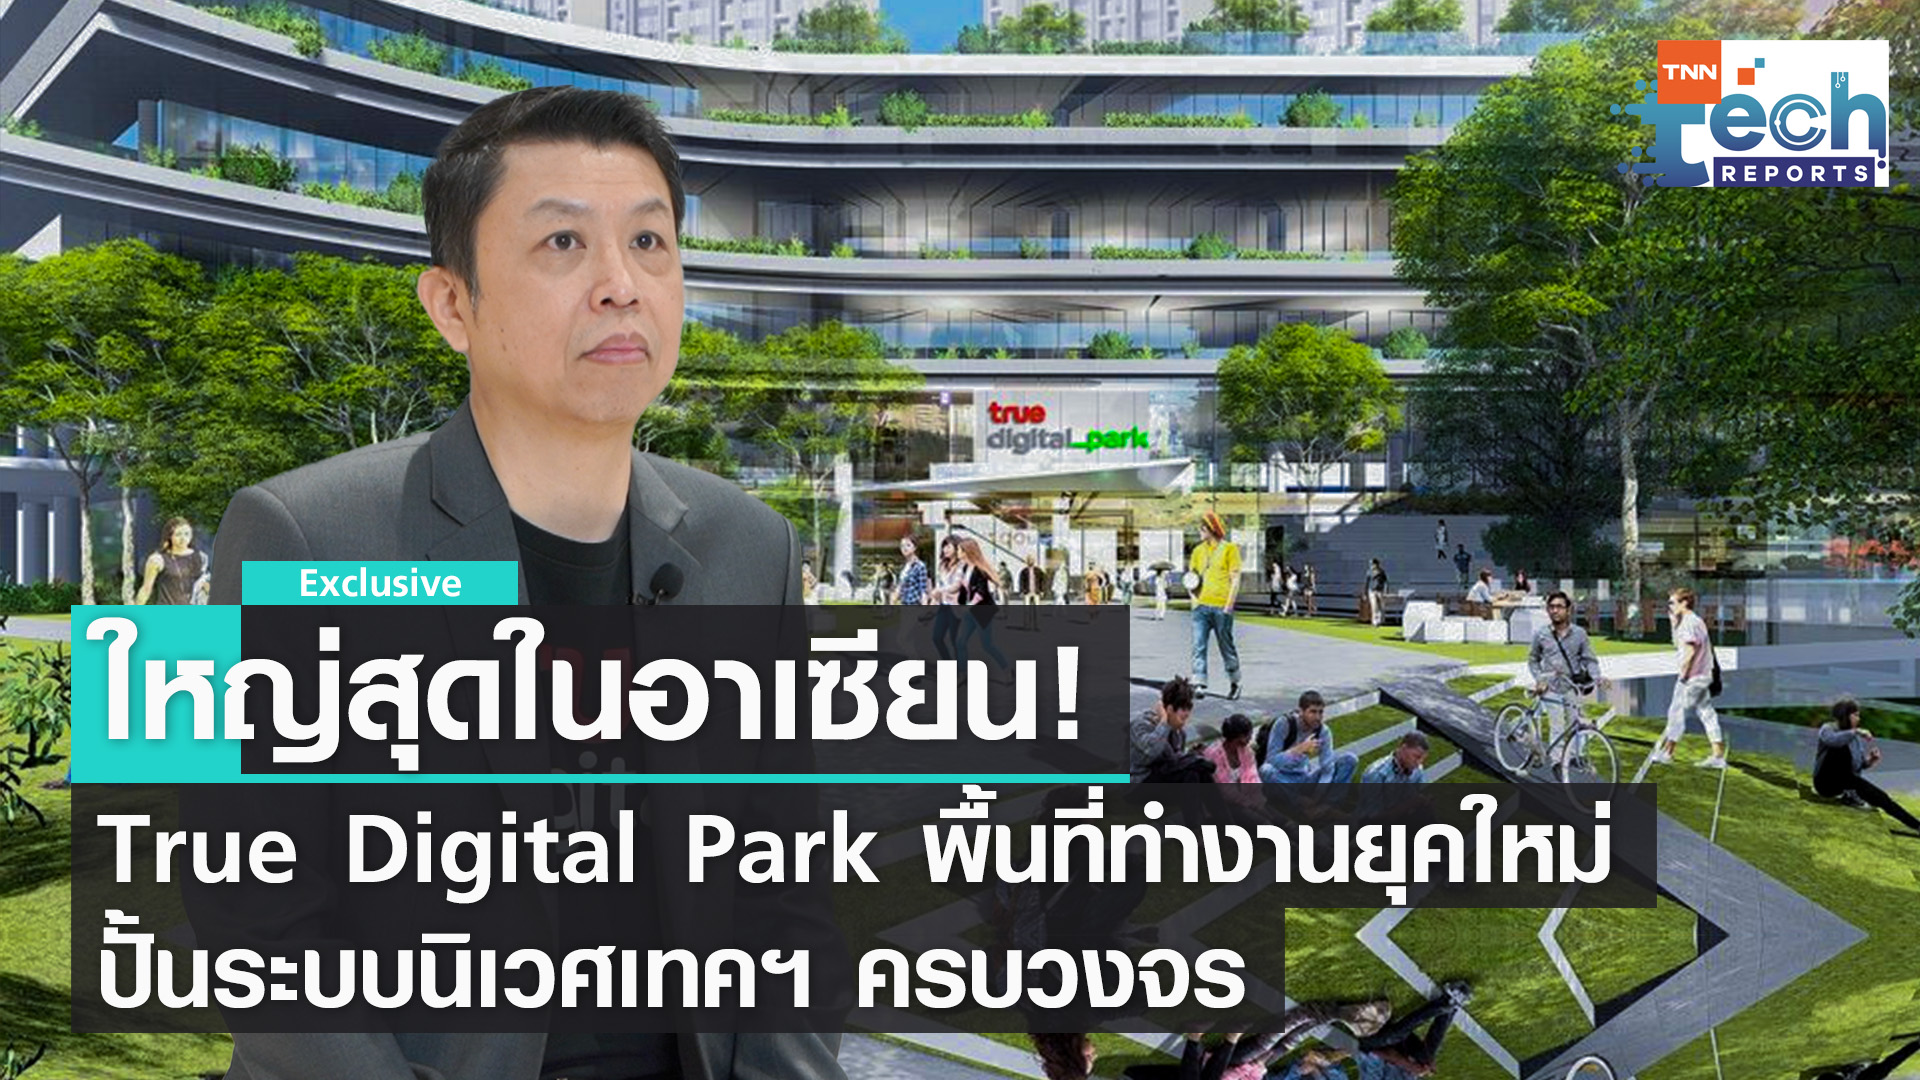 True Digital Park แหล่งระบบนิเวศเทคฯ ครบวงจรใจกลางเมืองกรุงเทพ ประเทศไทย | TNN Tech Reports